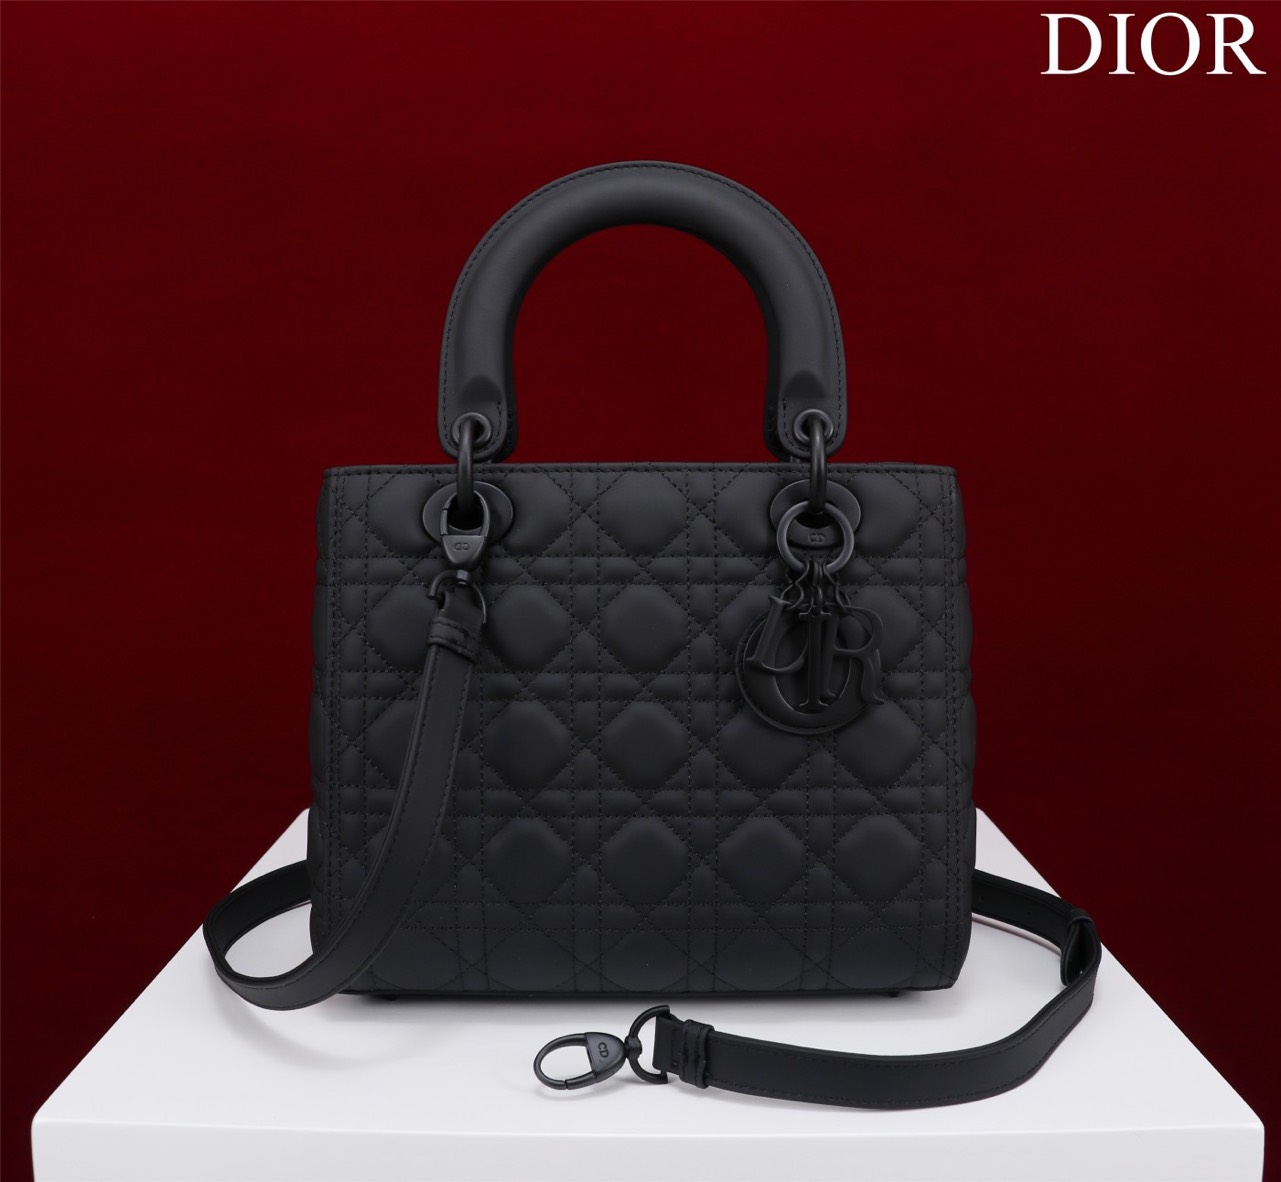 Tổng Hợp Mẫu Túi Xách Dior Lady Siêu Cấp Da Lì Đủ Màu Khóa Trắng Nhiều Size